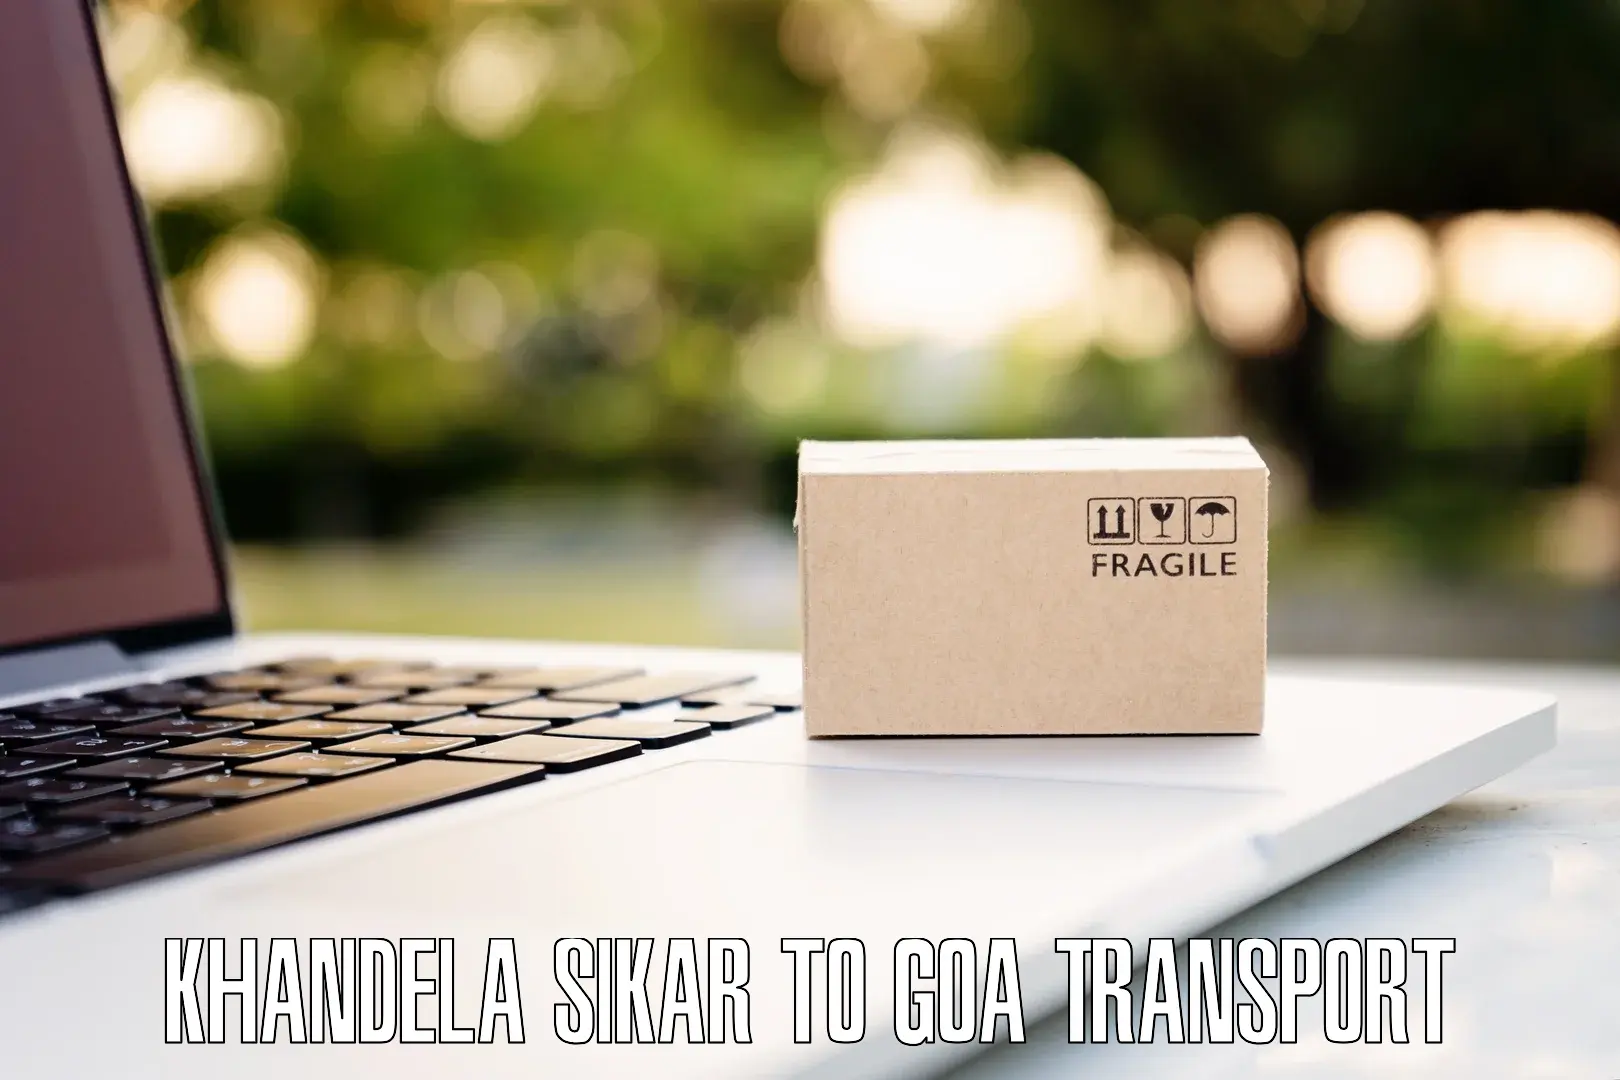 Furniture transport service Khandela Sikar to Ponda